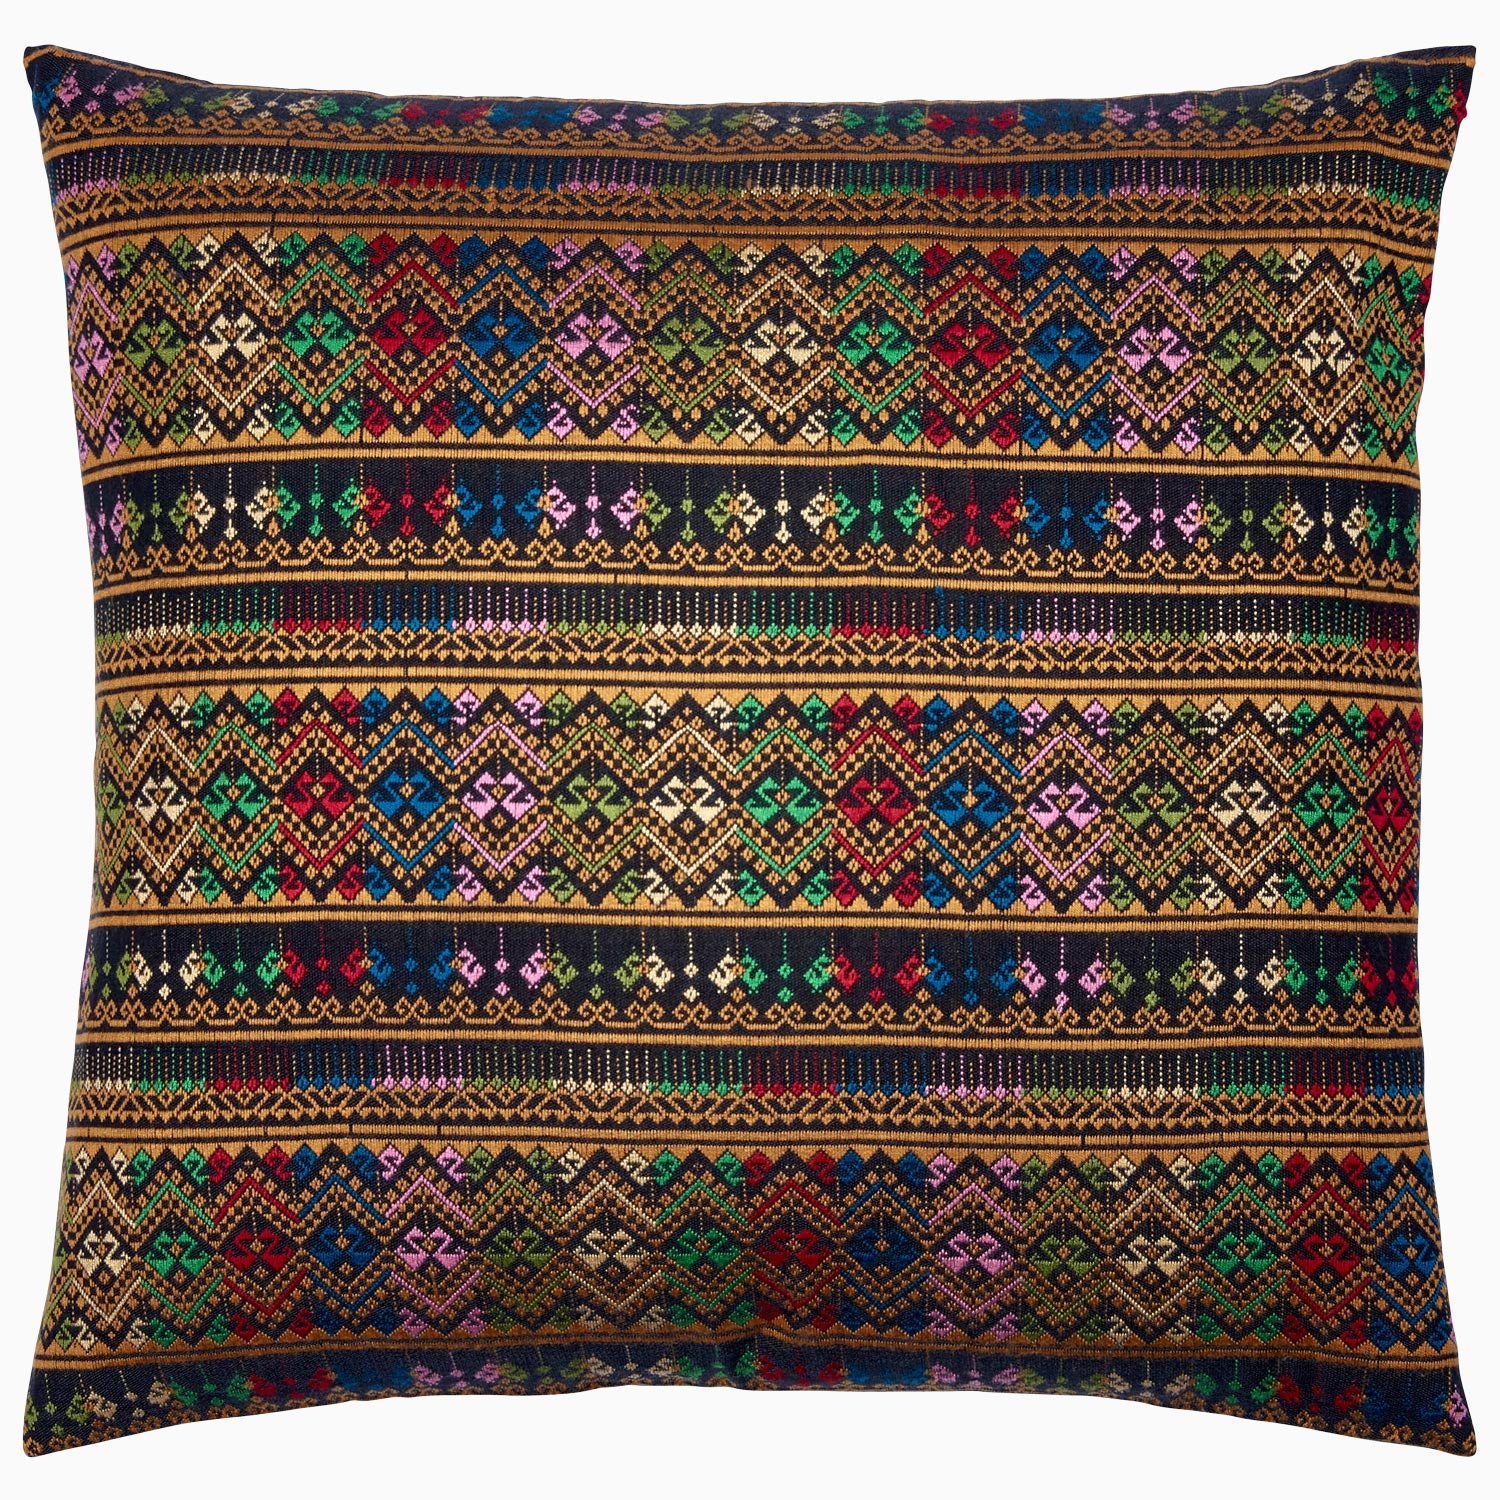 Details Decorative Pillow Main